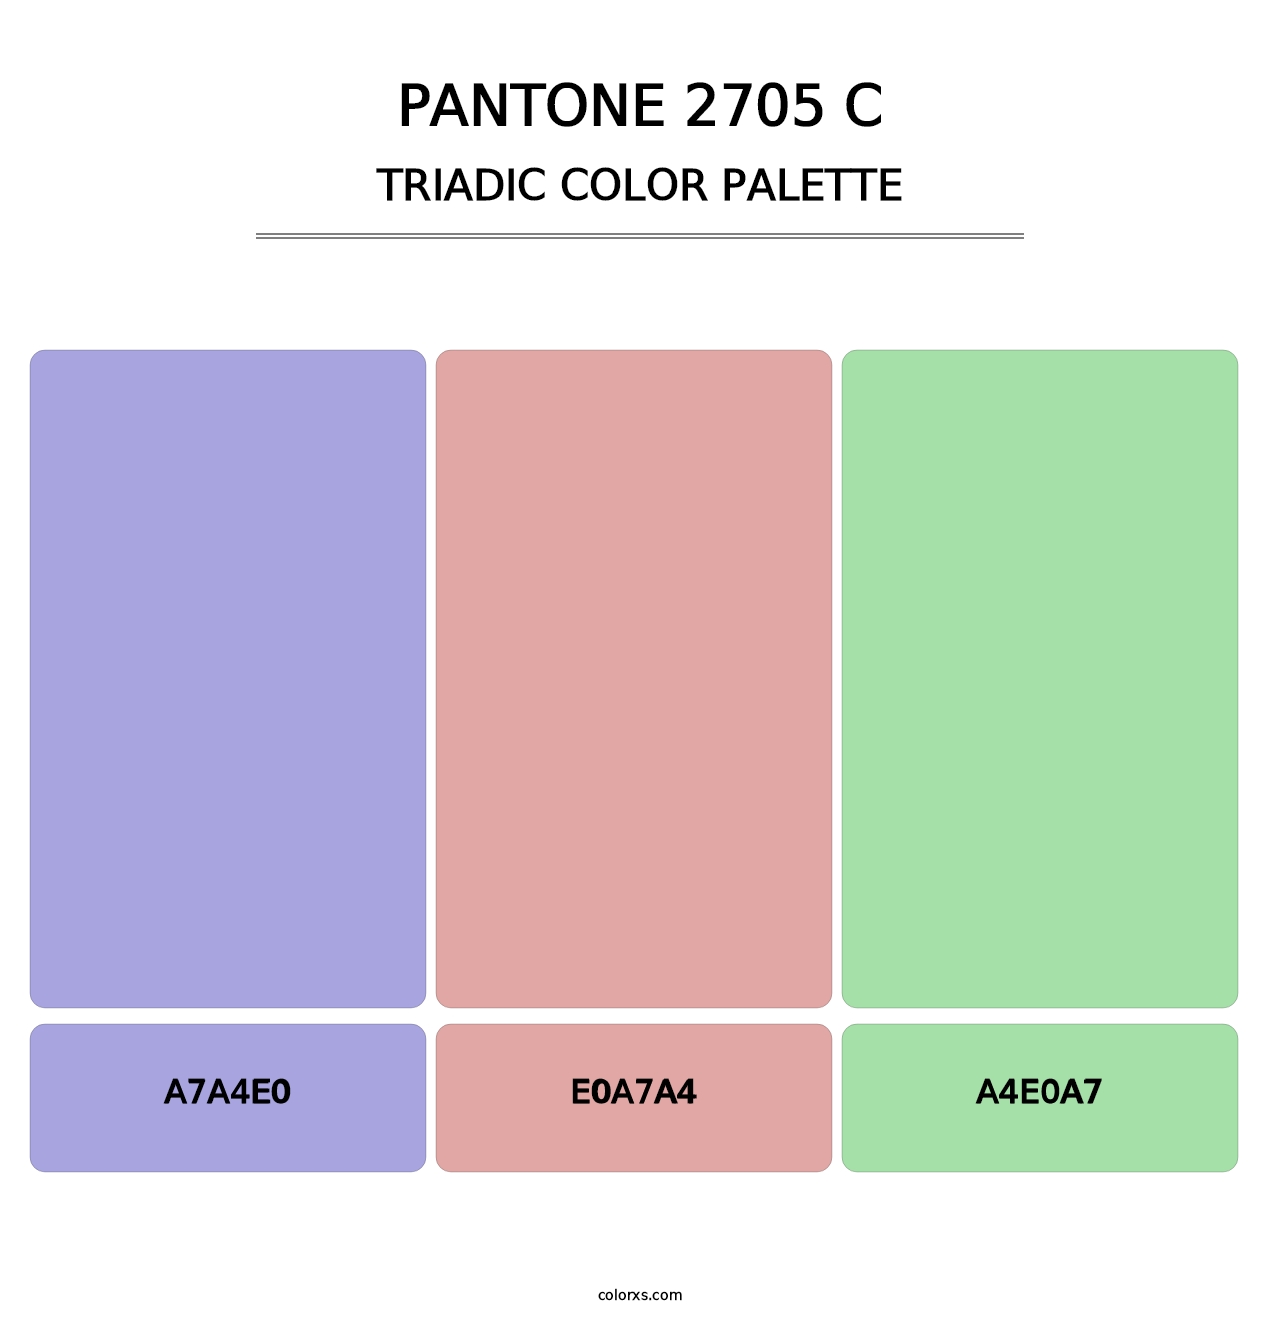 PANTONE 2705 C - Triadic Color Palette